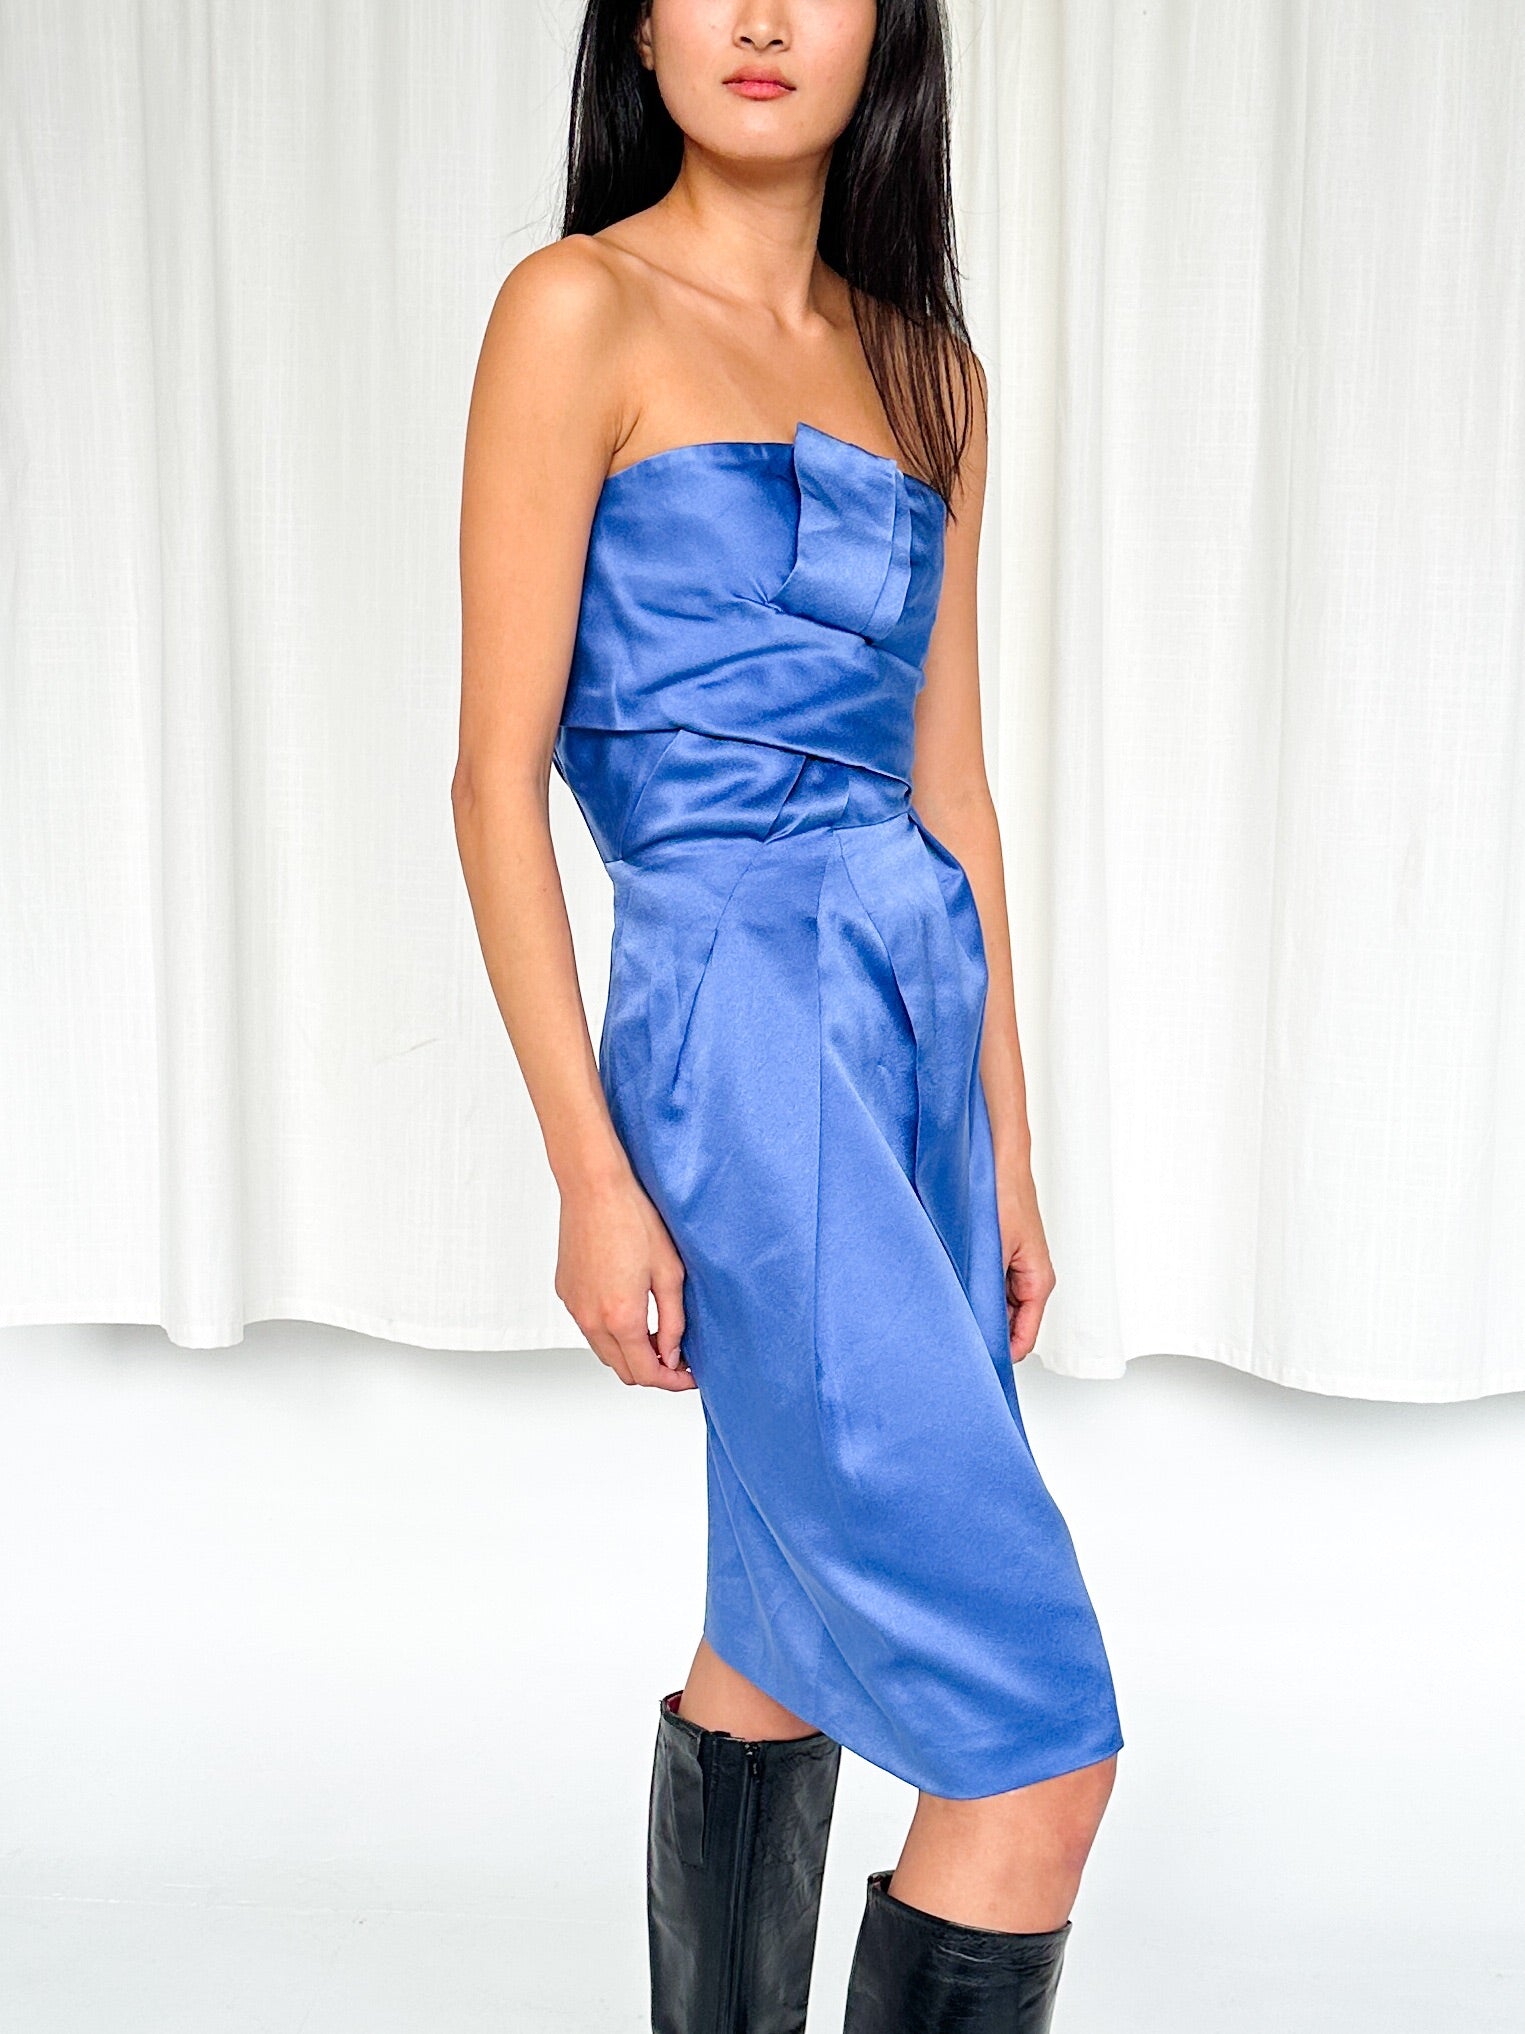 Alberta Ferretti Blue Silk Strapless Dress (S-M) - 1